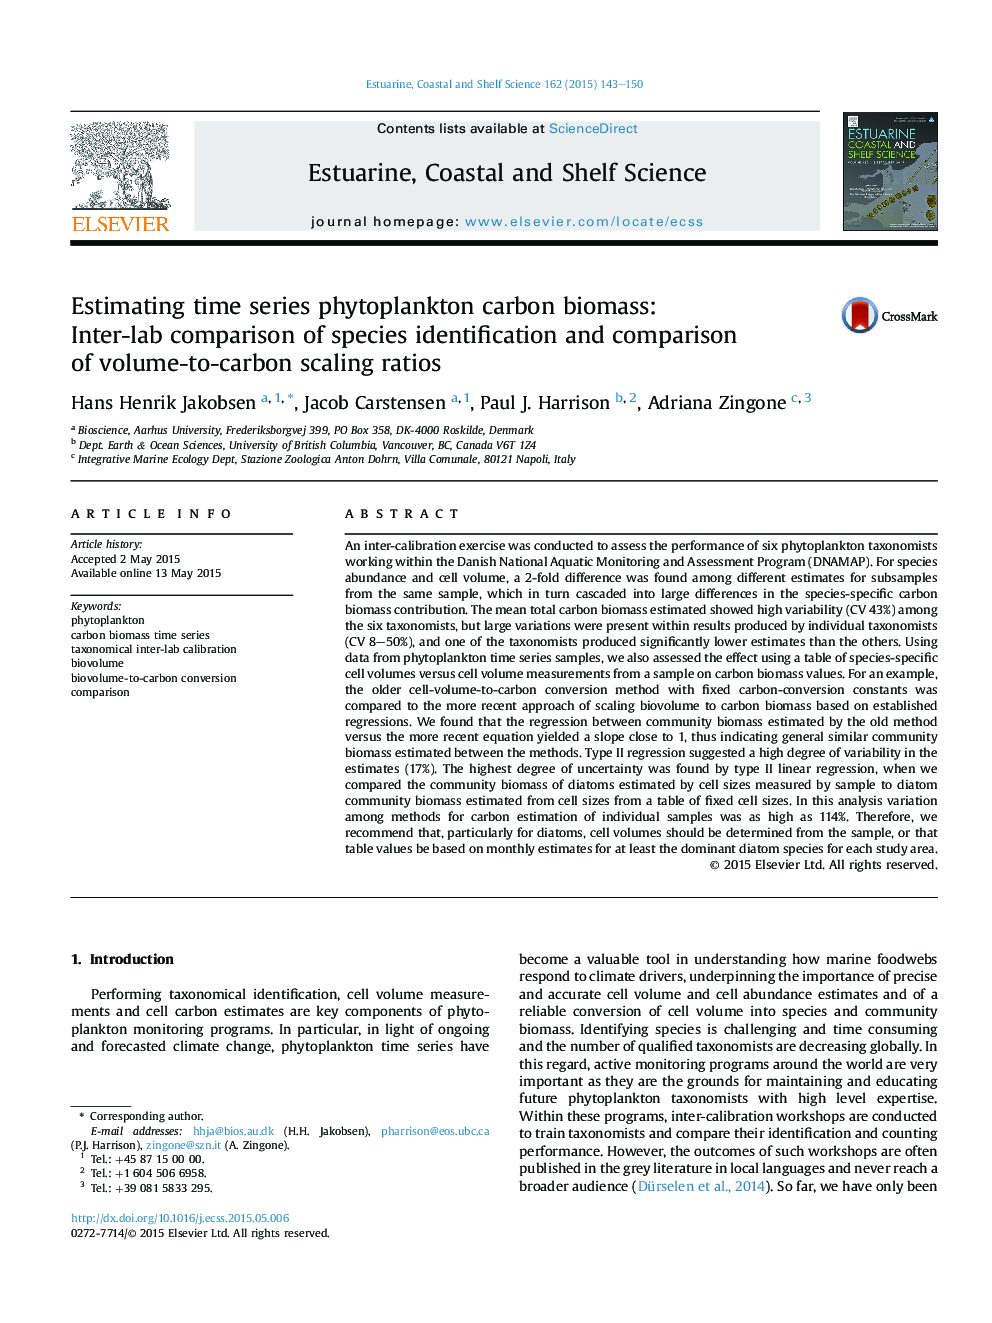 تخمین زنجیره فیتوپلانکتون زنجیره زمانی: مقایسه بینابینی شناسایی گونه ها و مقایسه مقادیر پوسته شدن حجم به کربن 